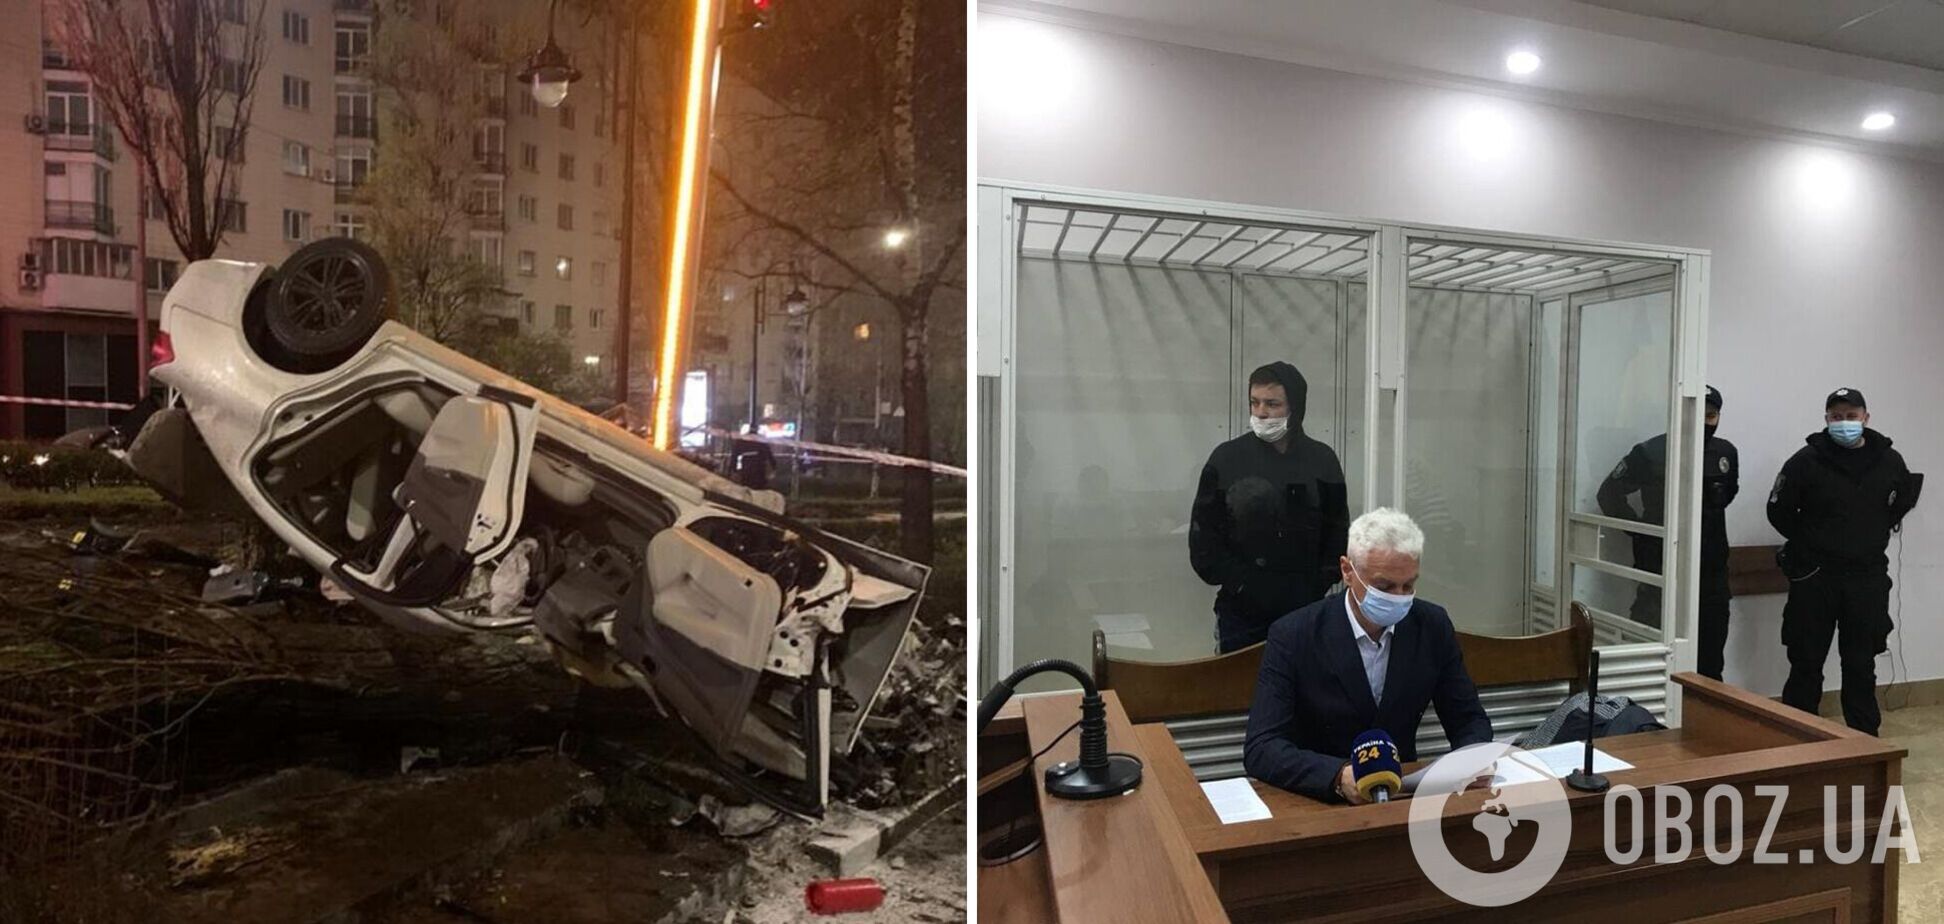 Суд взял под стражу виновника смертельного ДТП в Киеве. Фото и видео